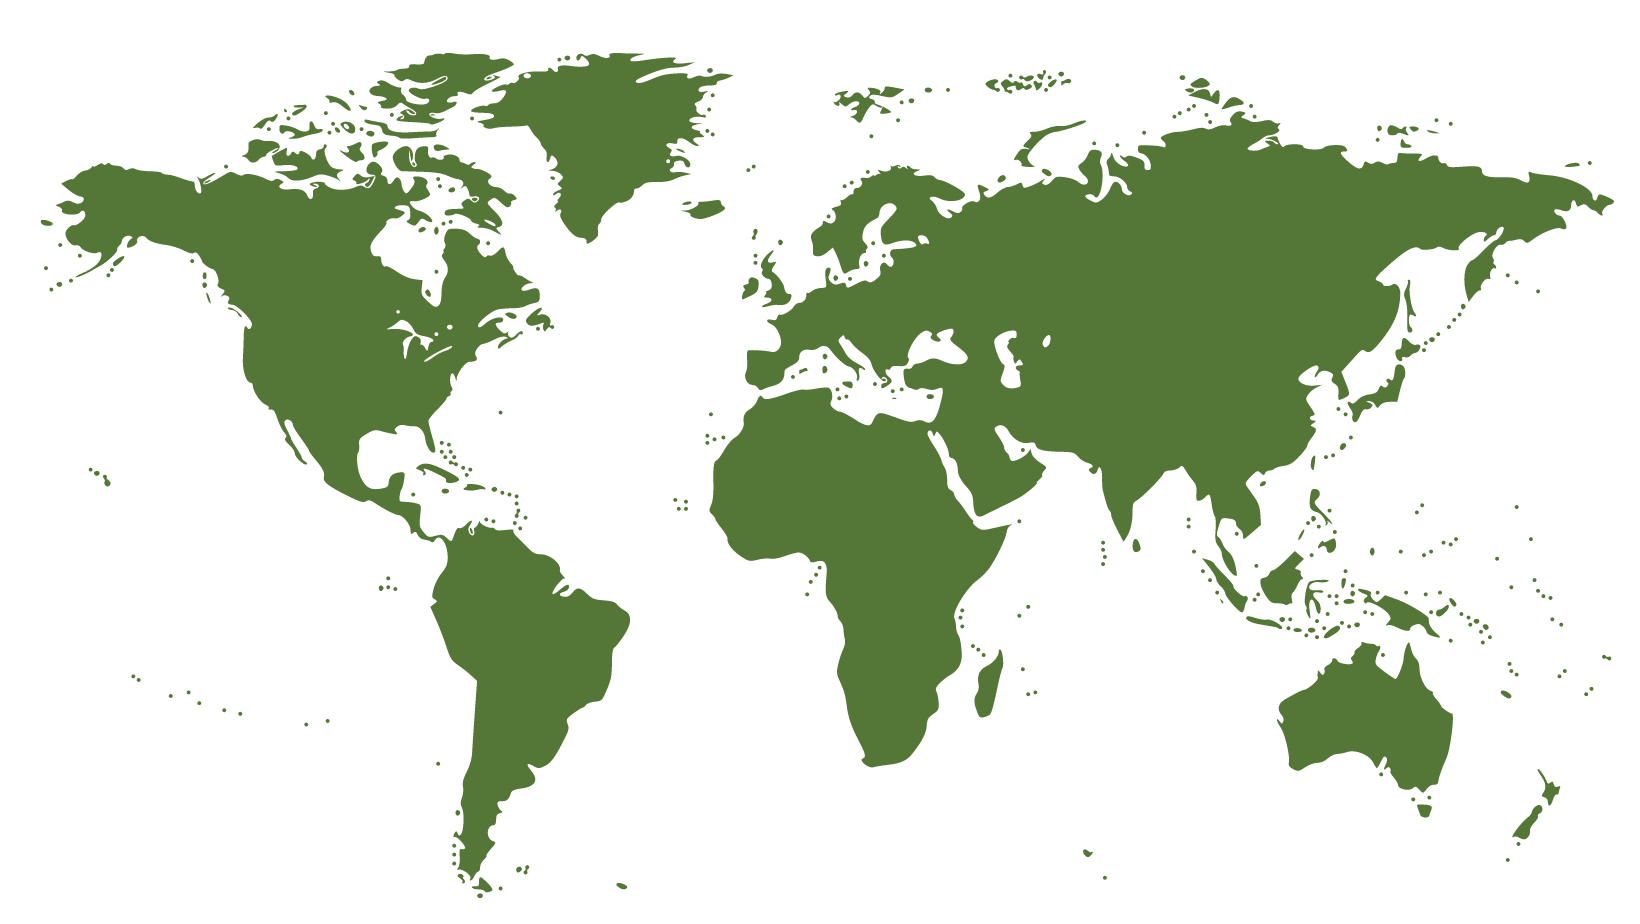 WIC Global Packaging Locations